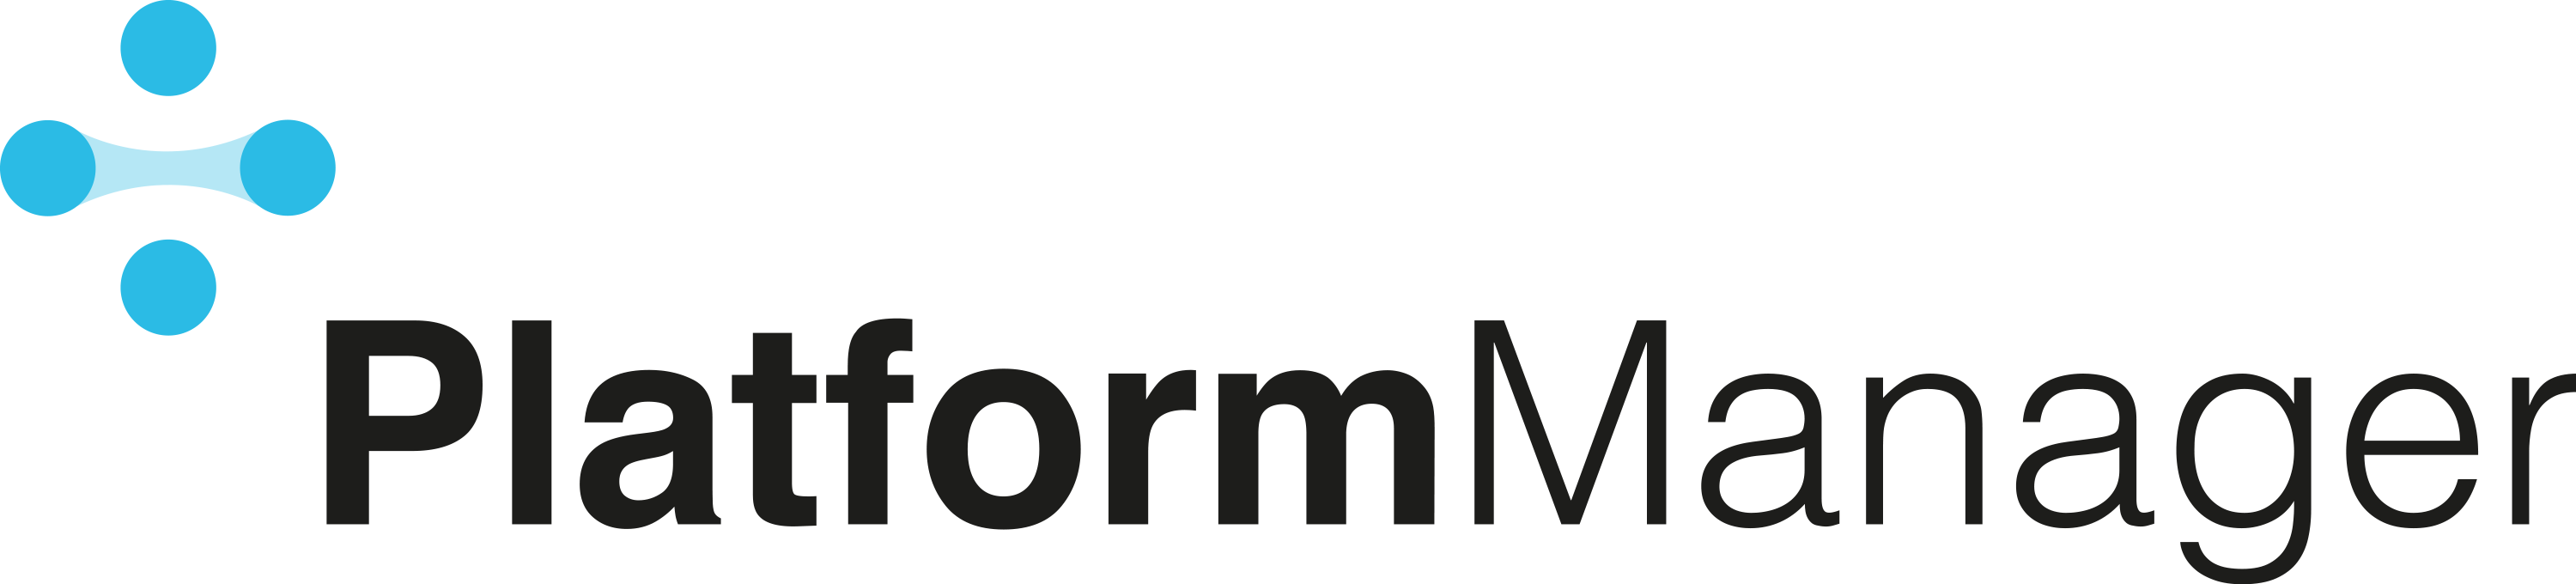 Platformmanager-logo2.png